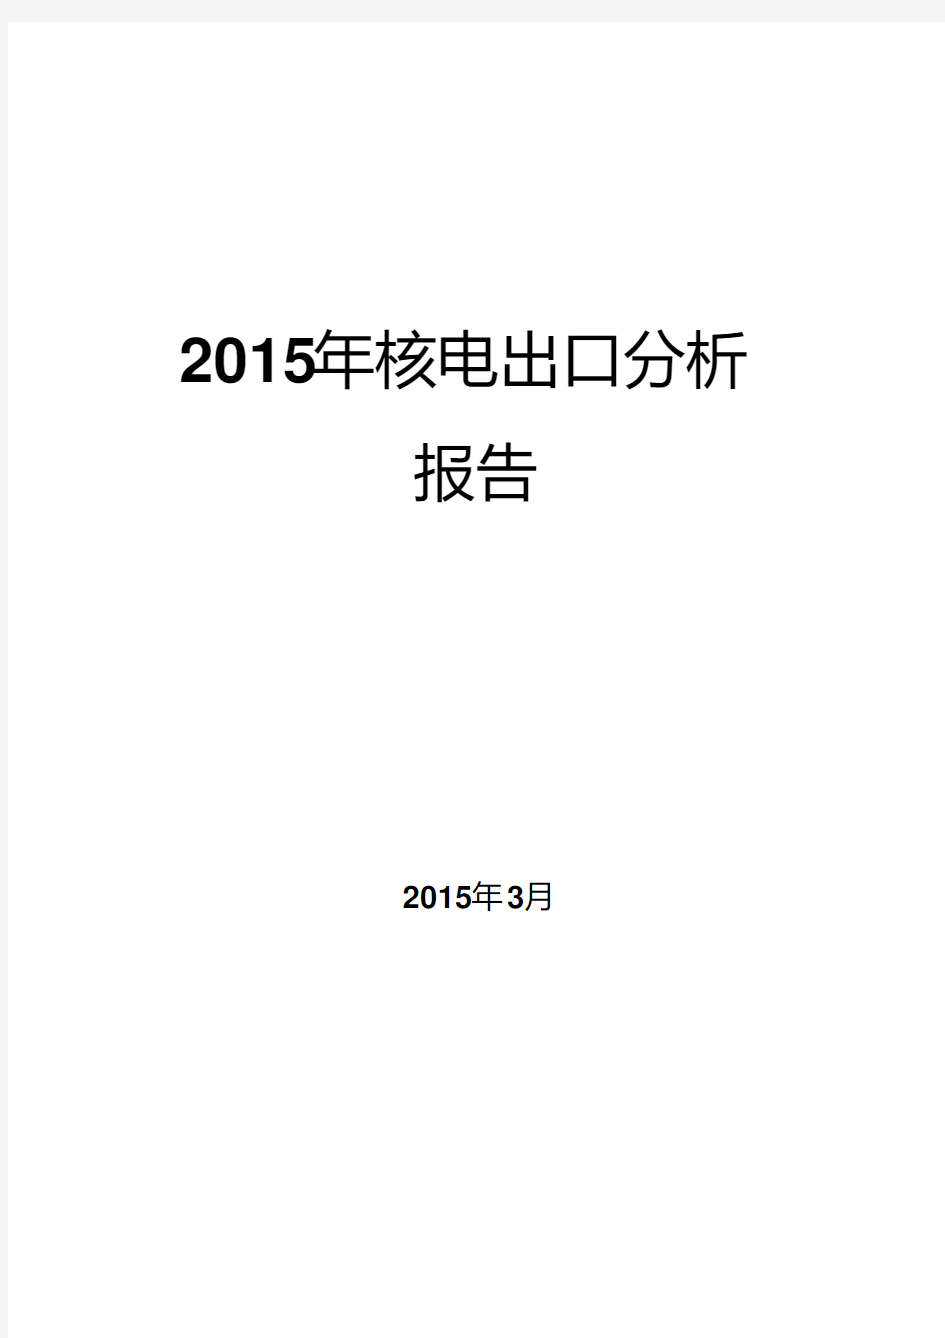 2015年核电出口分析报告